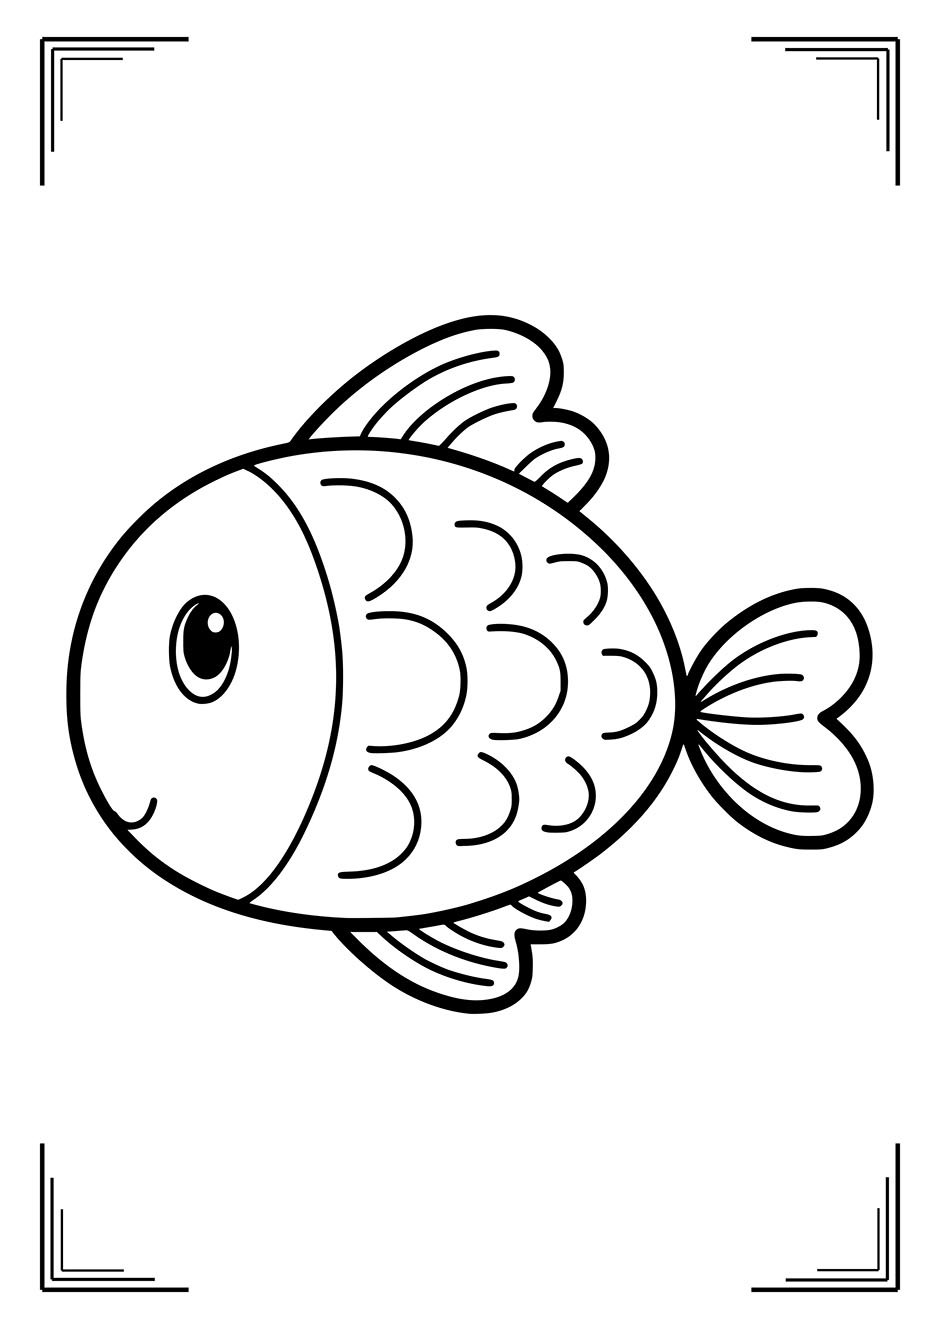 Раскраска рыбки для детей 5 6 лет. Раскраска рыбка. Рыбка раскраска для детей. Рыба раскраска для детей. Рыбка для раскрашивания для детей.